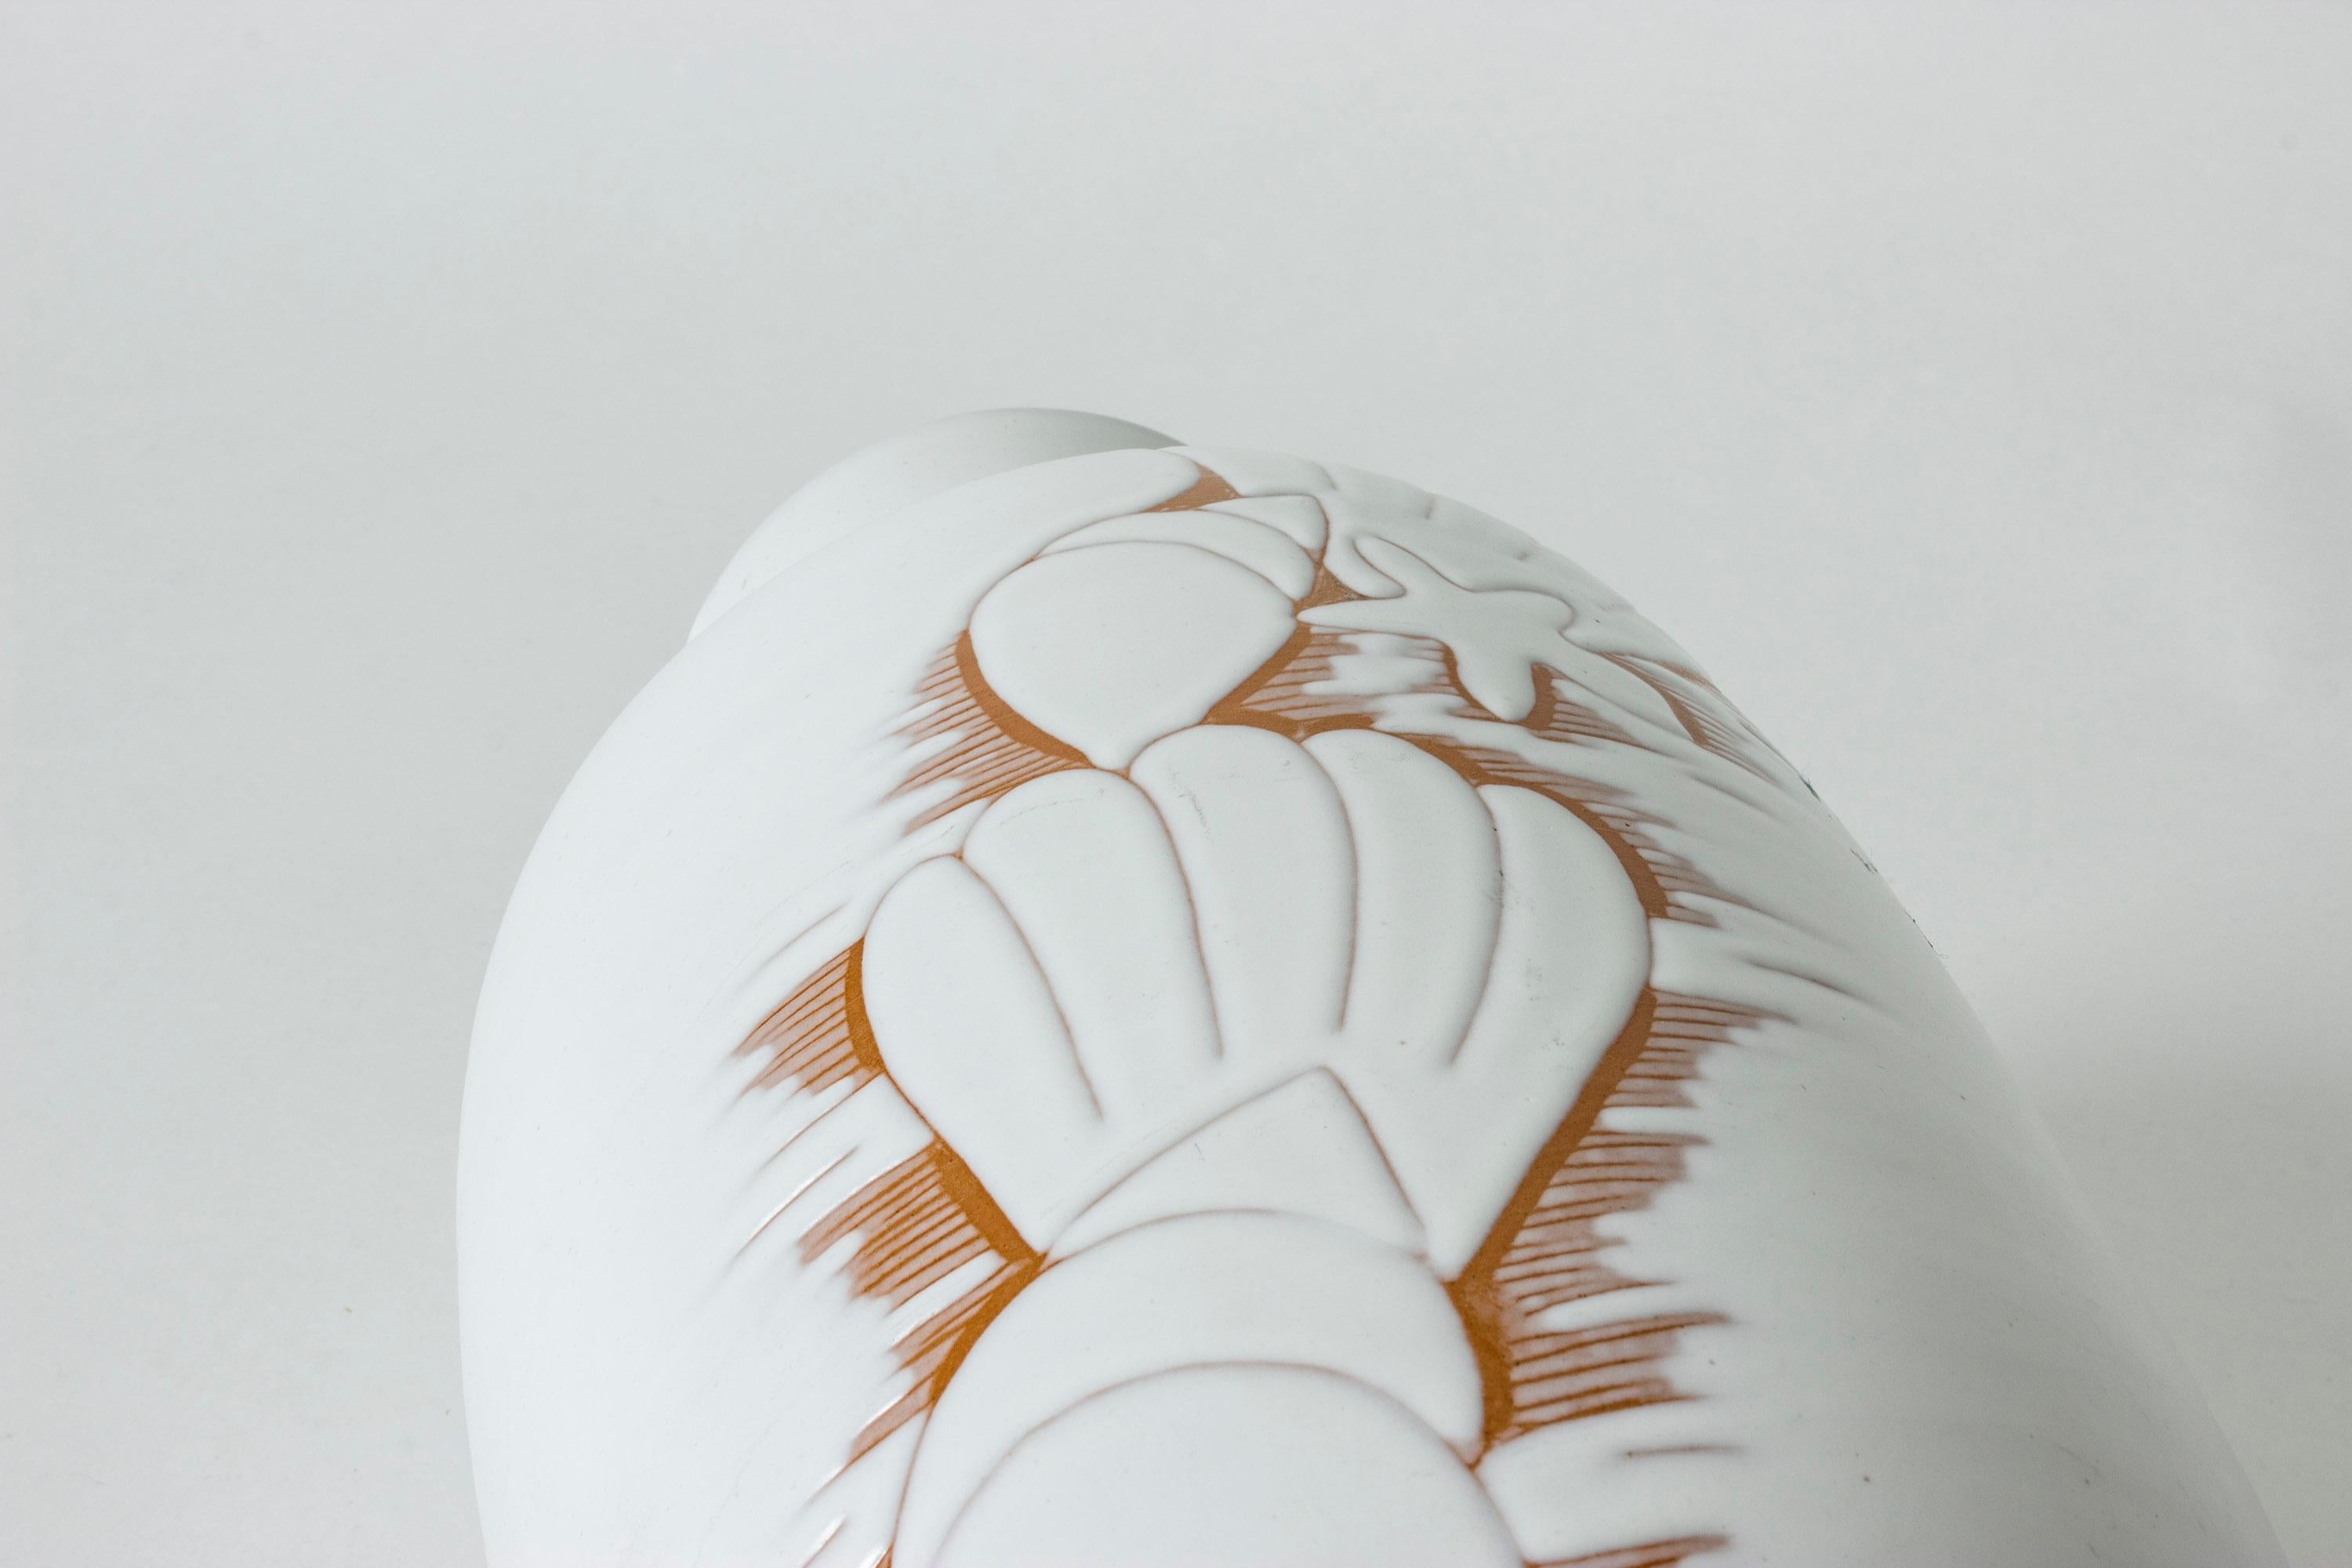 Large Swedish ceramic earthenware vase by Anna-Lisa Thomson for Upsala-Ekeby 3